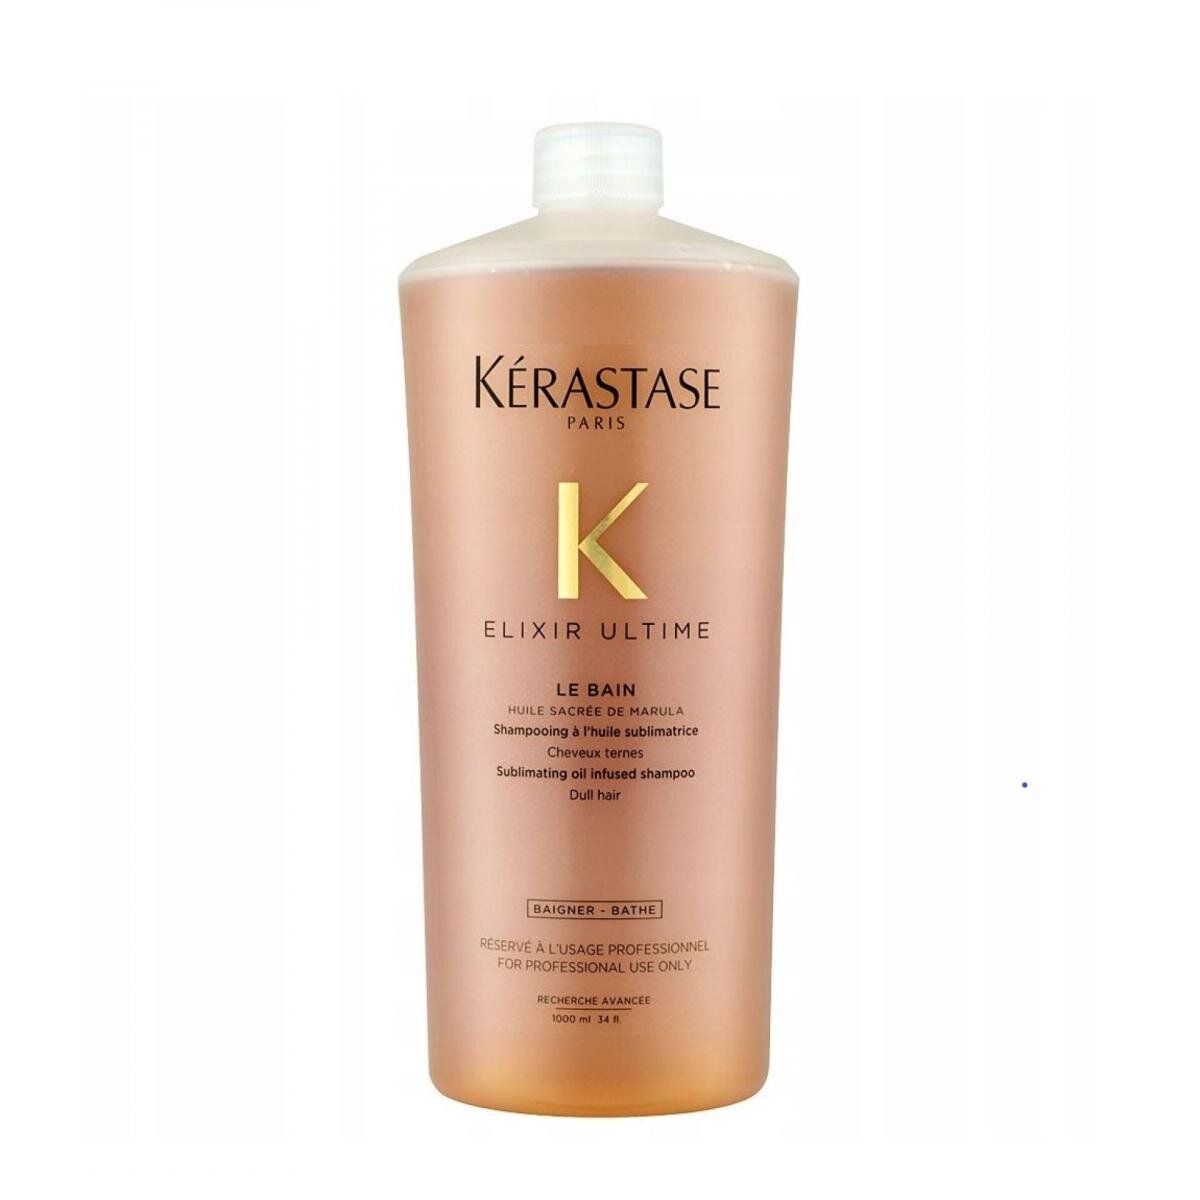 Kerastase | Elixir Ultime Le Bain Oil Infused Shampoo (Dull Hair) 1000ml | HKTVmall The HK Shopping Platform